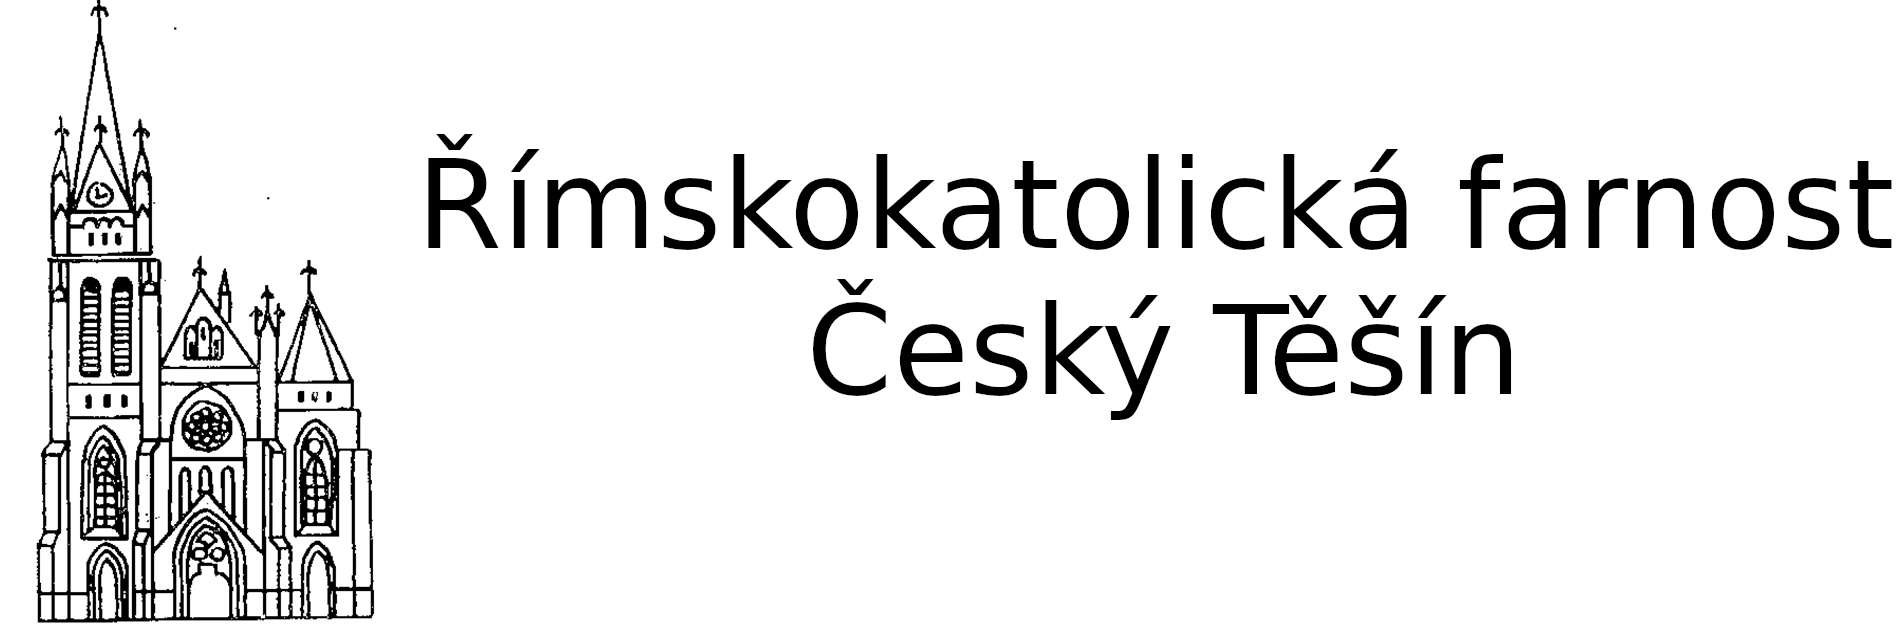 Logo Projekty - Římskokatolická farnost Český Těšín